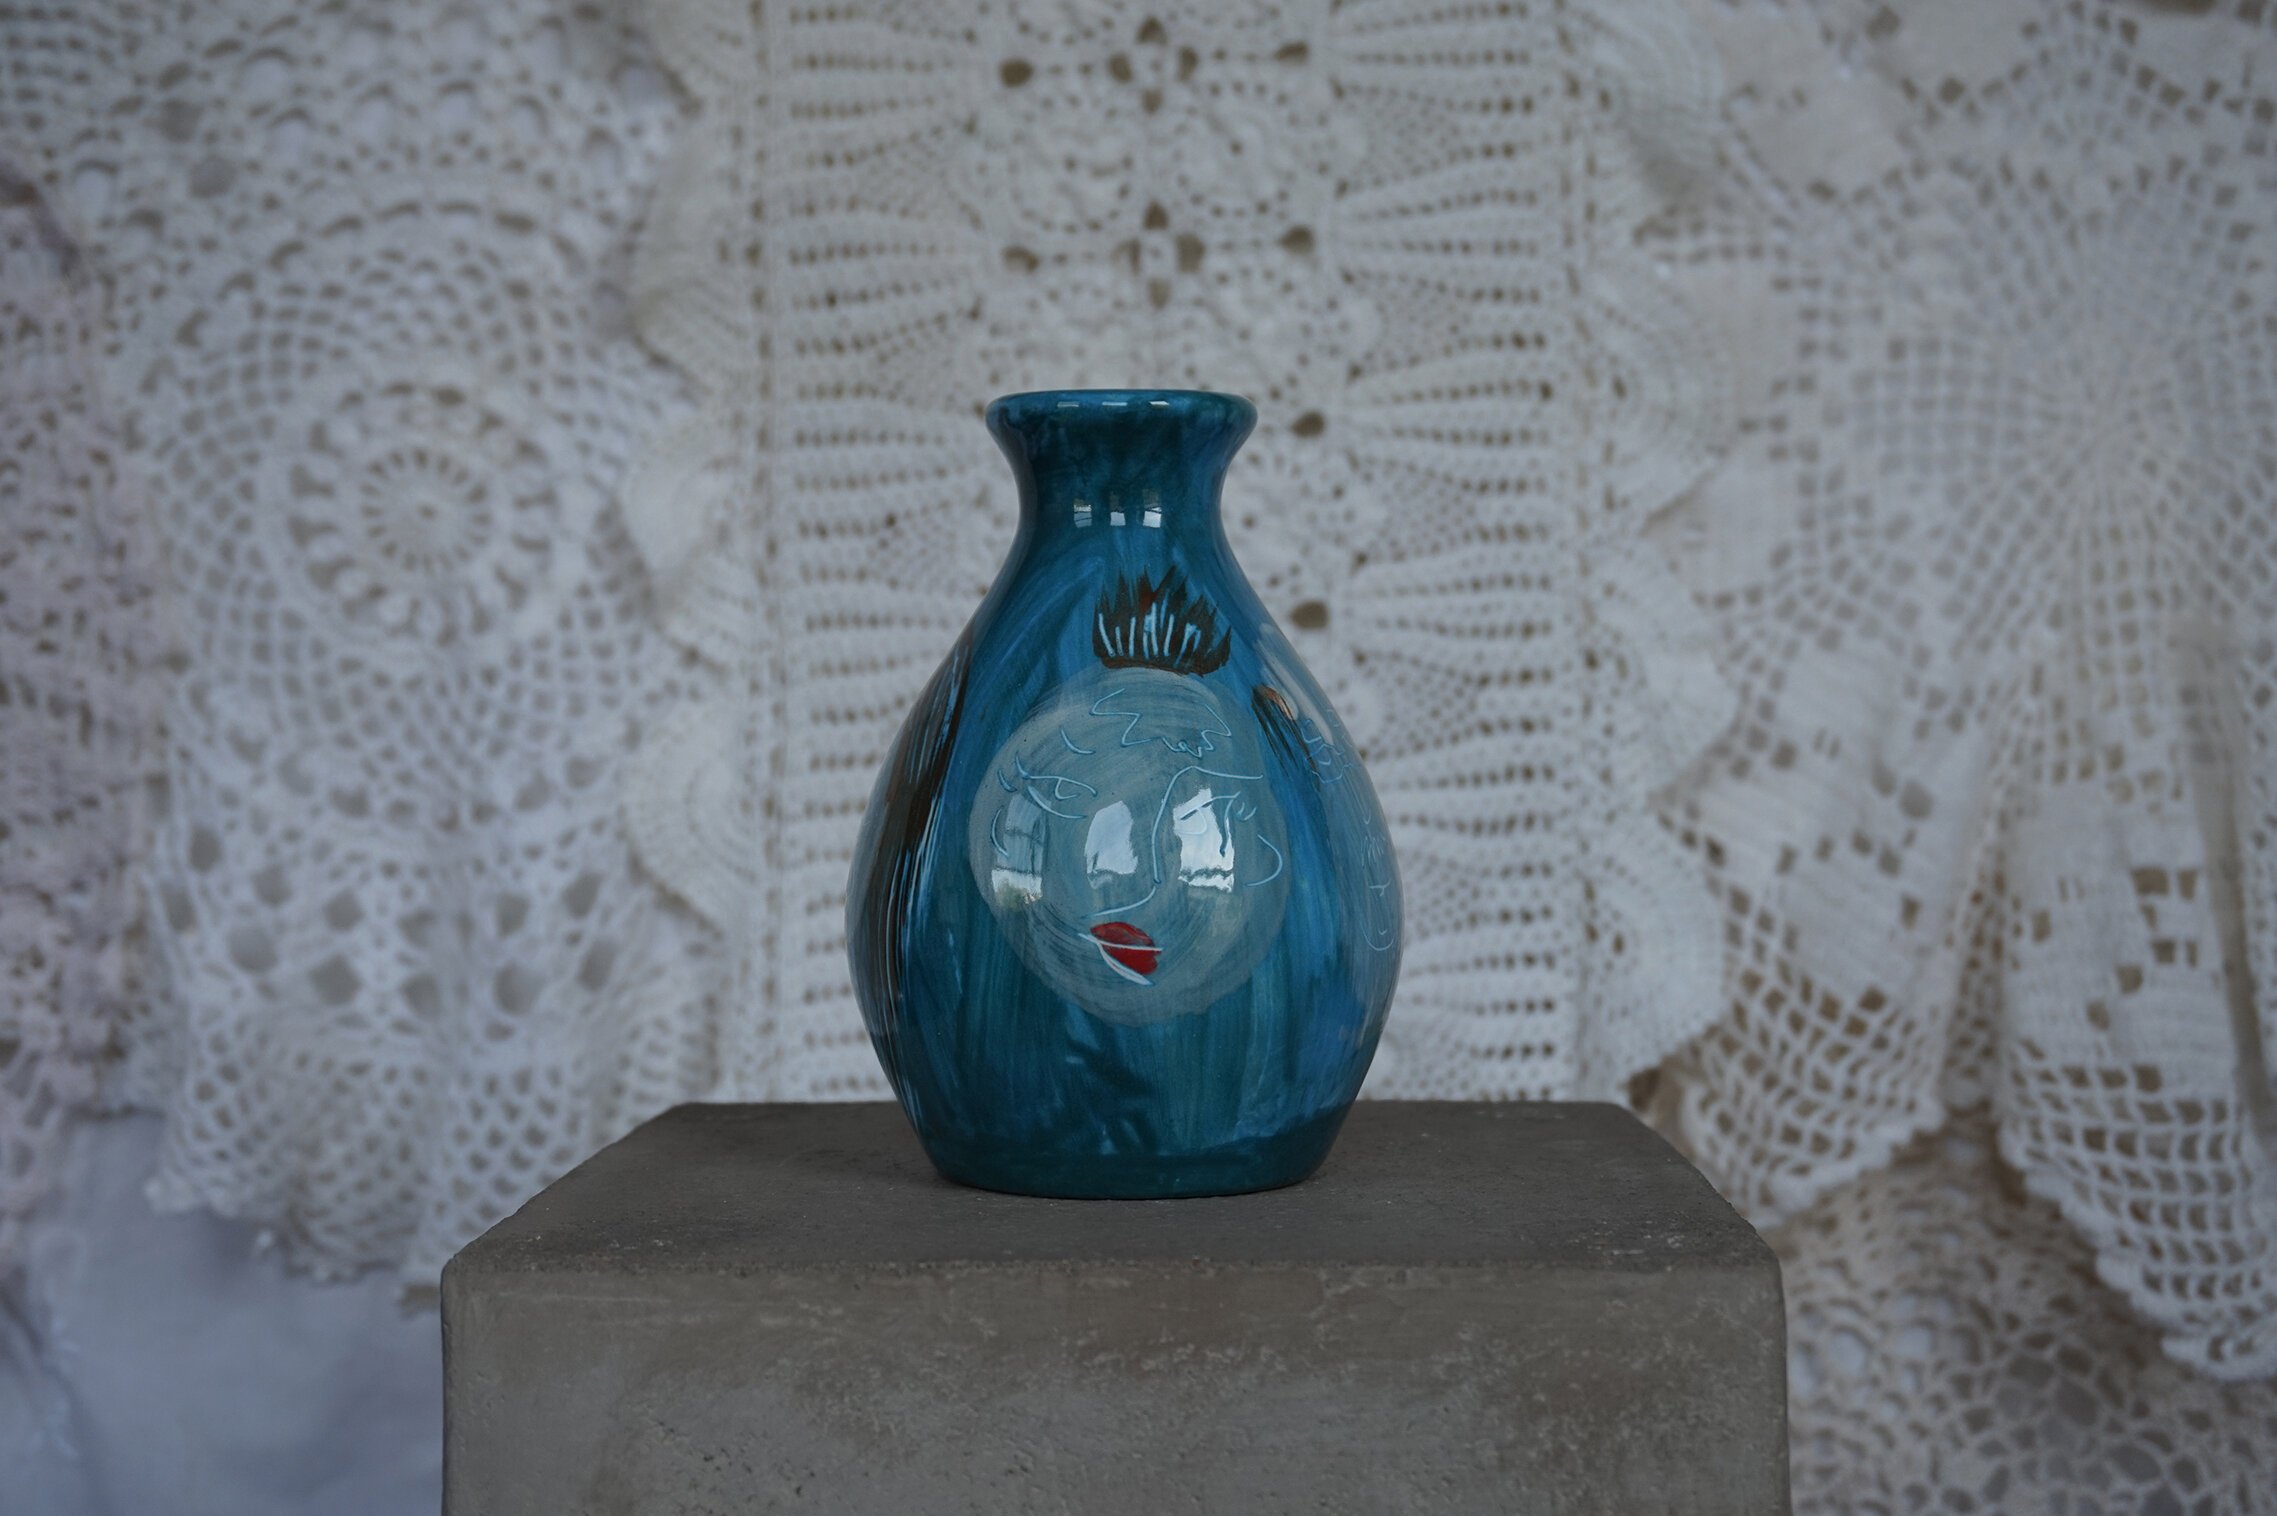   Vase, 2021   Porcelain  5.5 x 1.5 in 